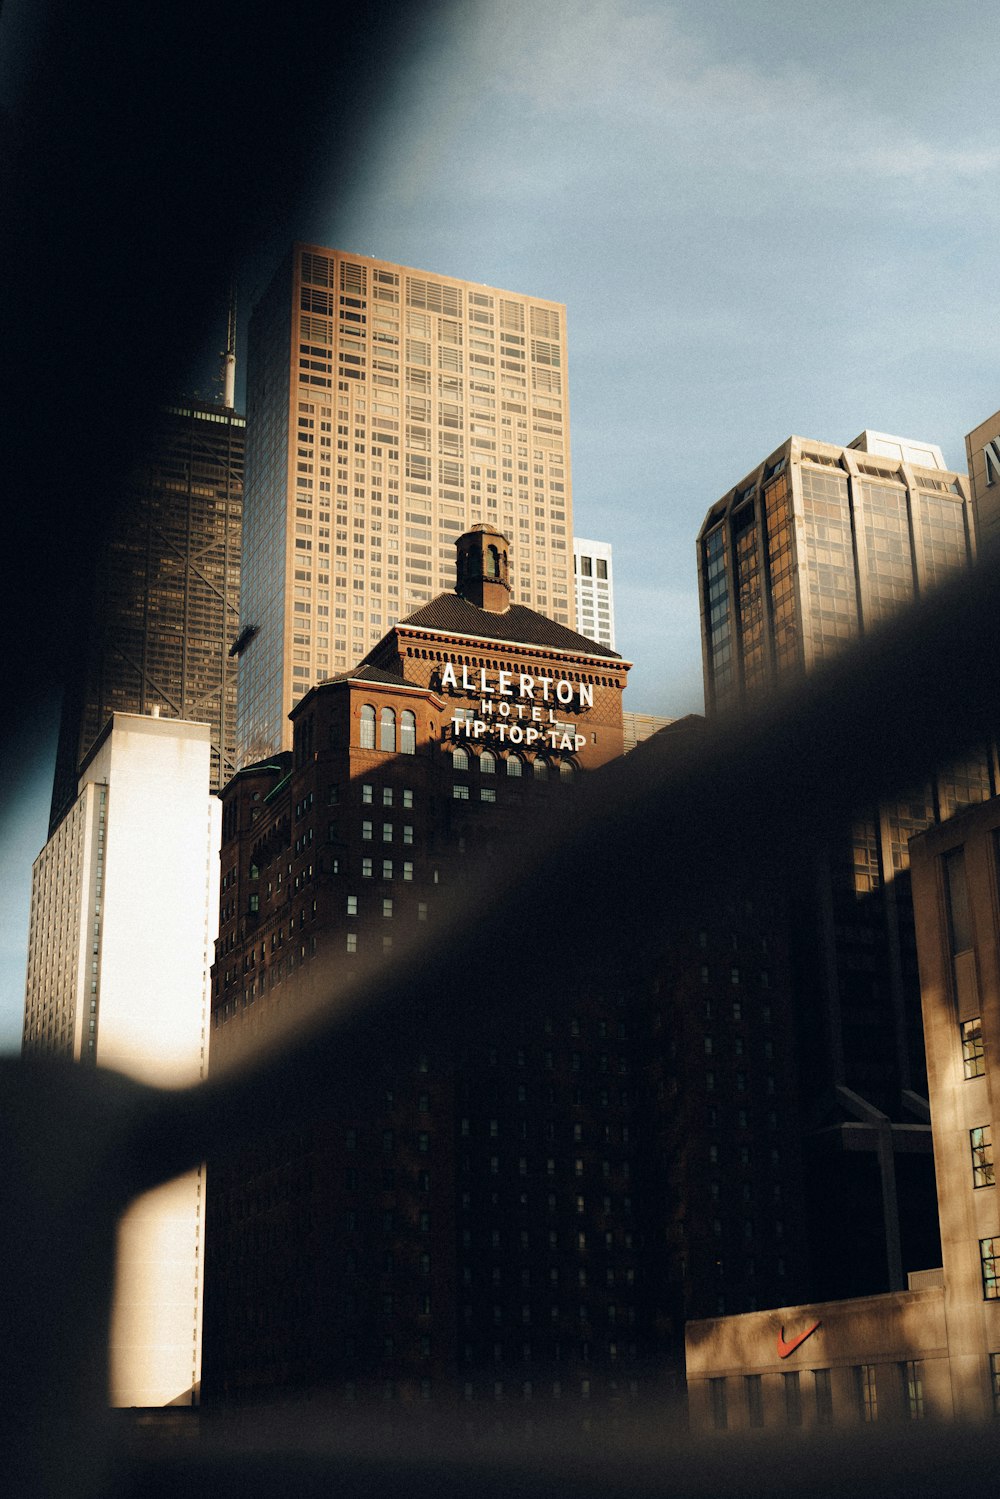 Une vue d’une ville depuis une fenêtre